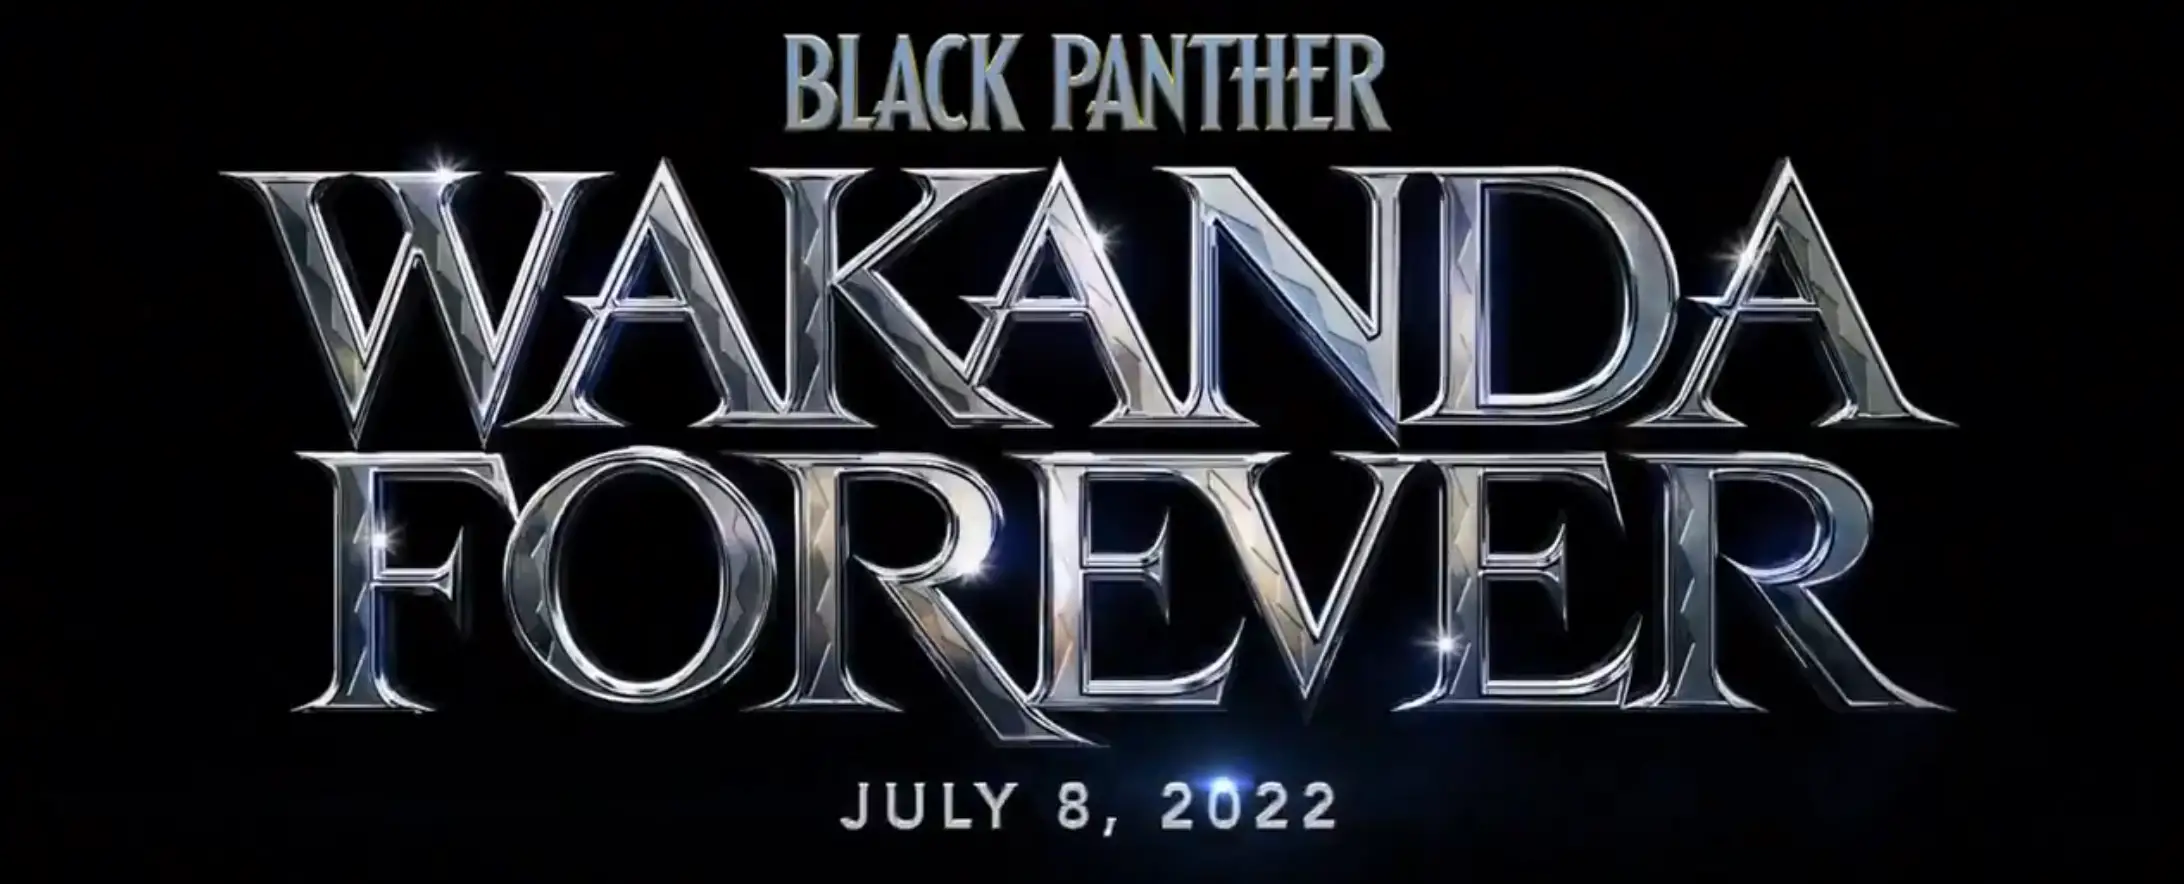 Black Panther Wakanda Forever Okoye